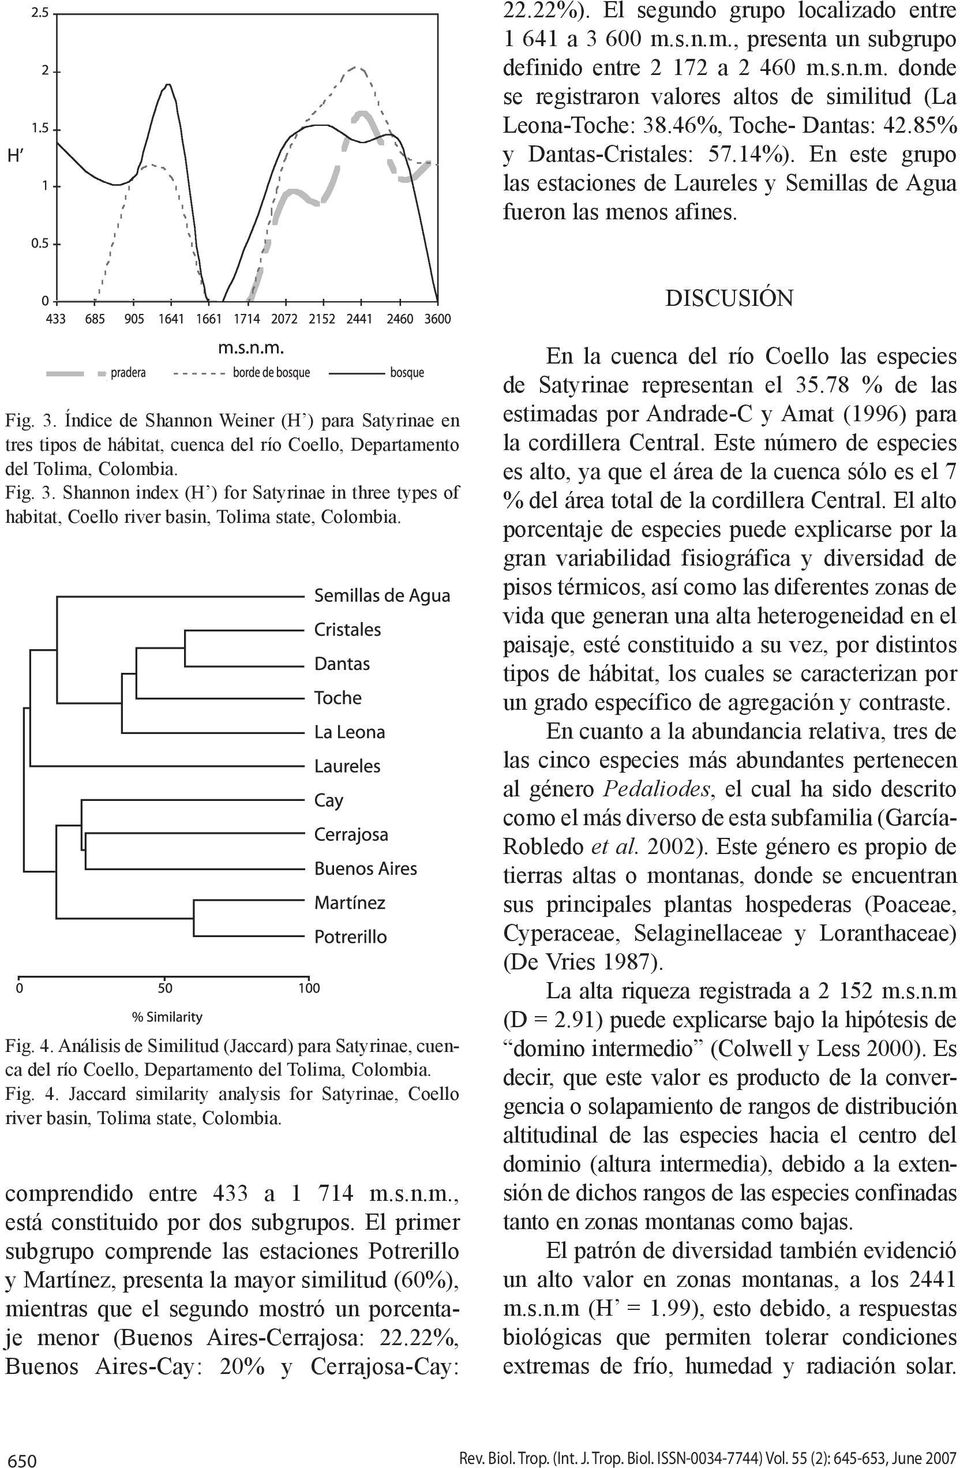 Índice de Shannon Weiner (H ) para Satyrinae en tres tipos de hábitat, cuenca del río Coello, Departamento del Tolima, Colombia. Fig. 3.